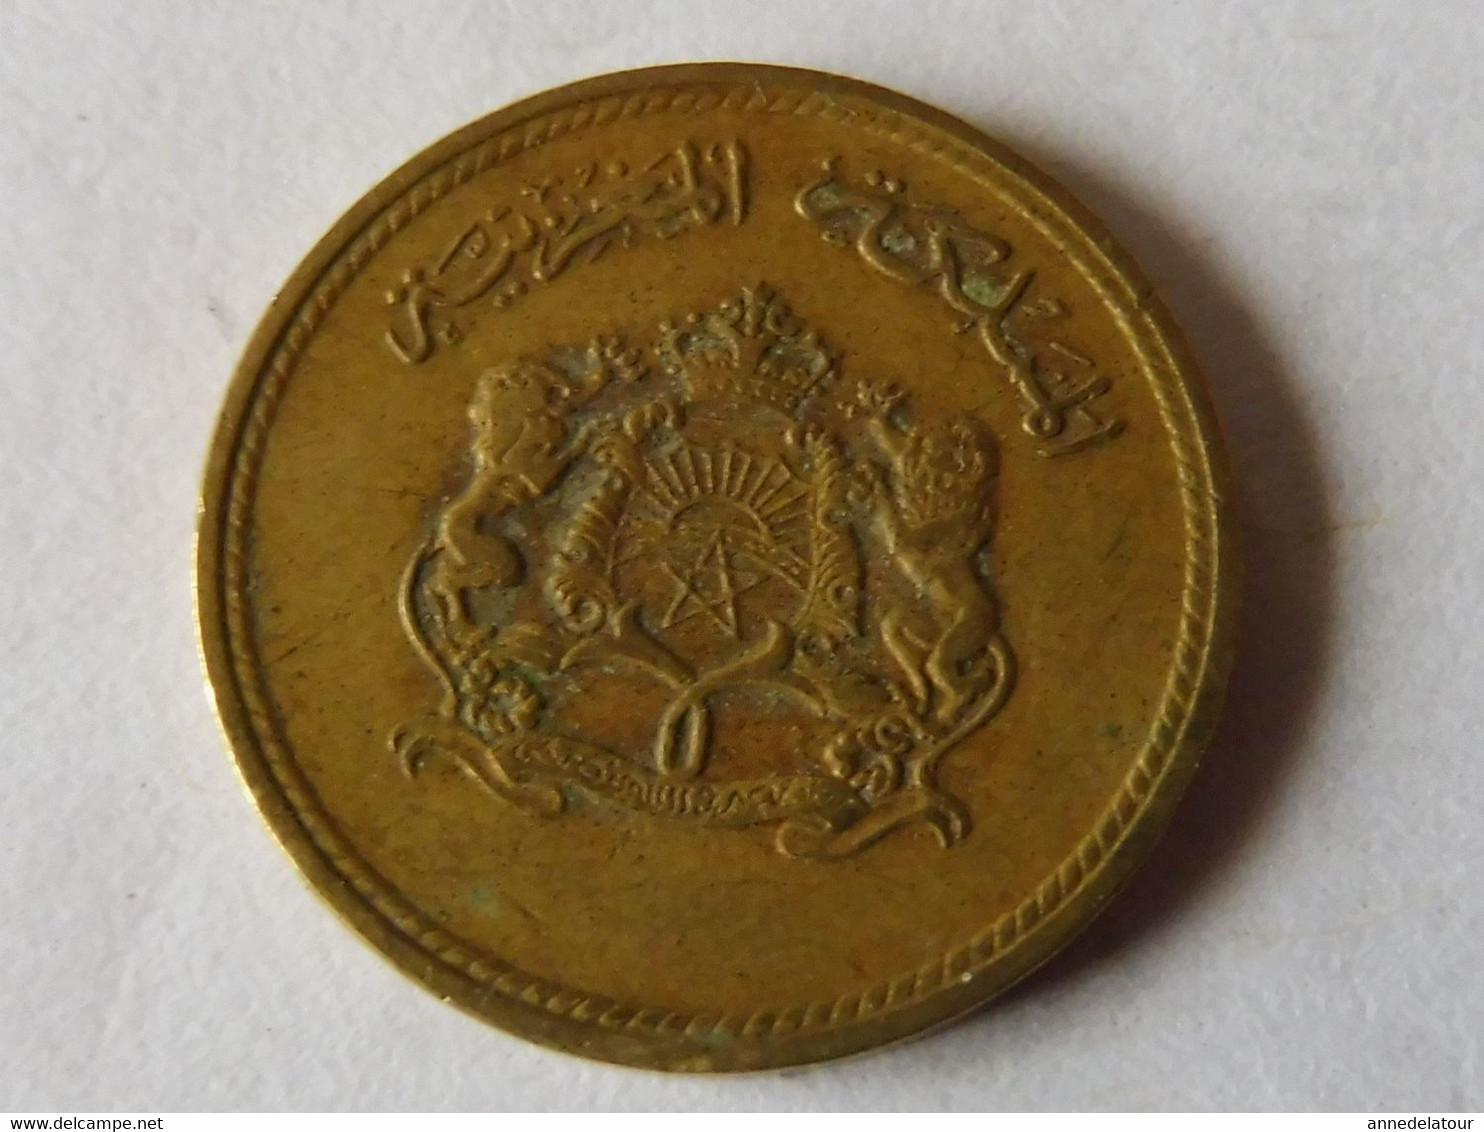 Pièce De Monnaie 1974 - 1394  (5 Centimes 1974 Du Royaume Du Maroc) - Origine Inconnue